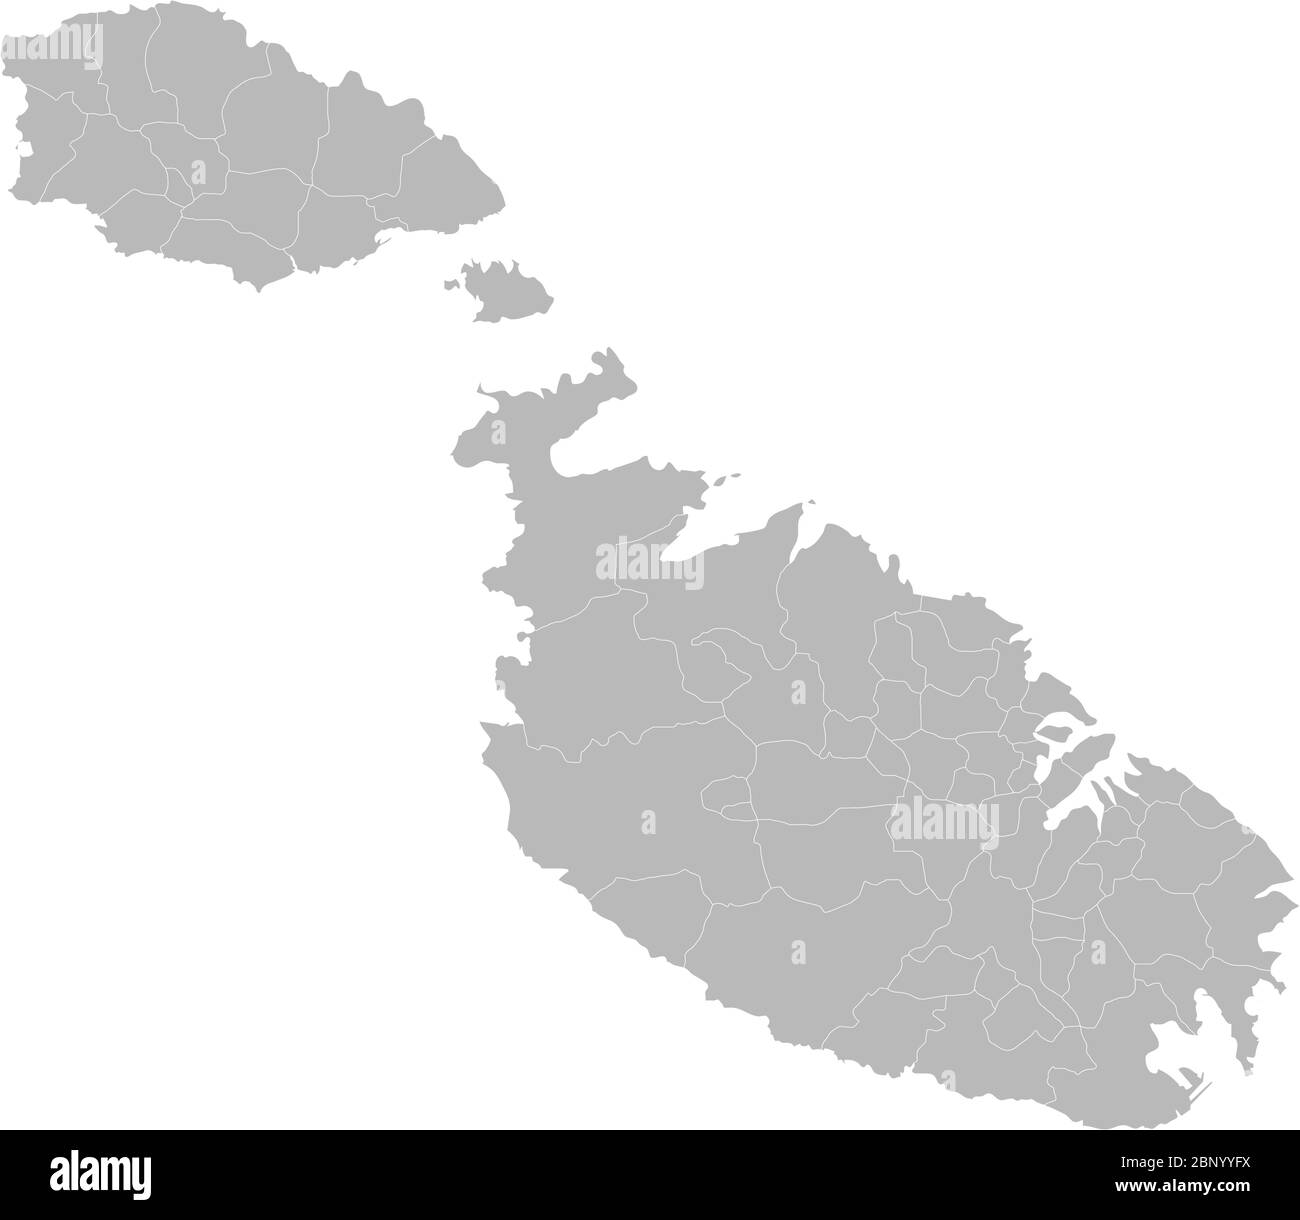 Malta Mappa dettagliata. Sfondo grigio chiaro. Perfetto per concetti aziendali, sfondi, sfondo, adesivi, etichette, poster, grafici e sfondi. Illustrazione Vettoriale